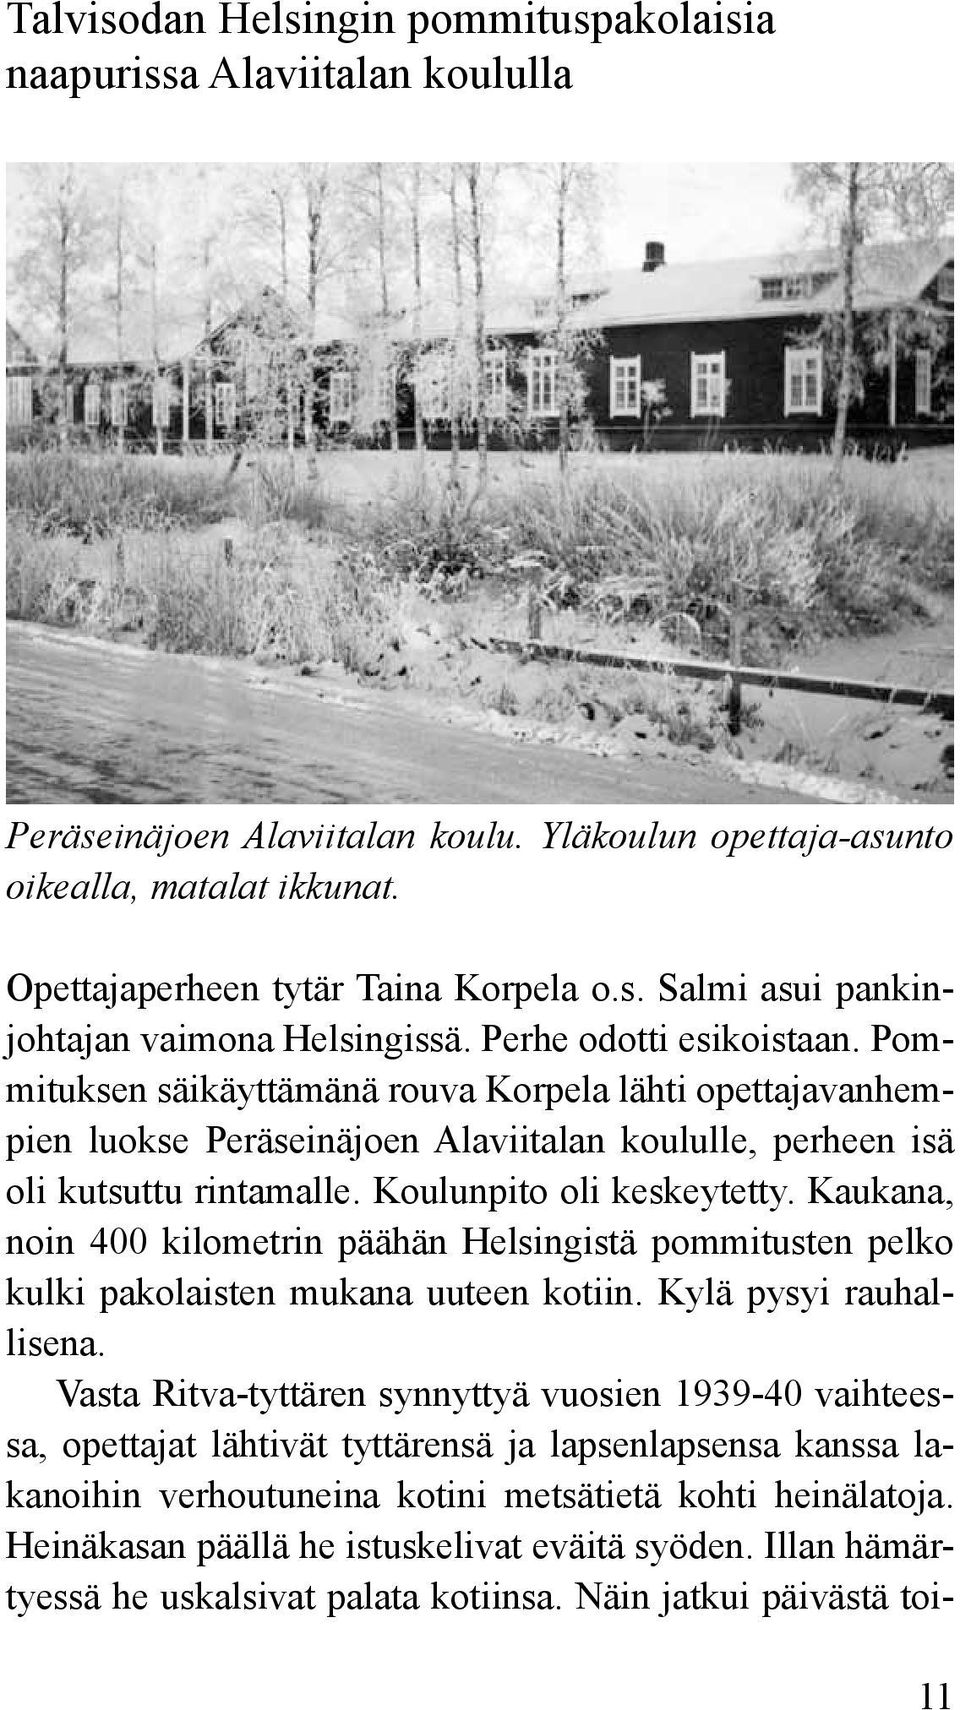 Kaukana, noin 400 kilometrin päähän Helsingistä pommitusten pelko kulki pakolaisten mukana uuteen kotiin. Kylä pysyi rauhallisena.